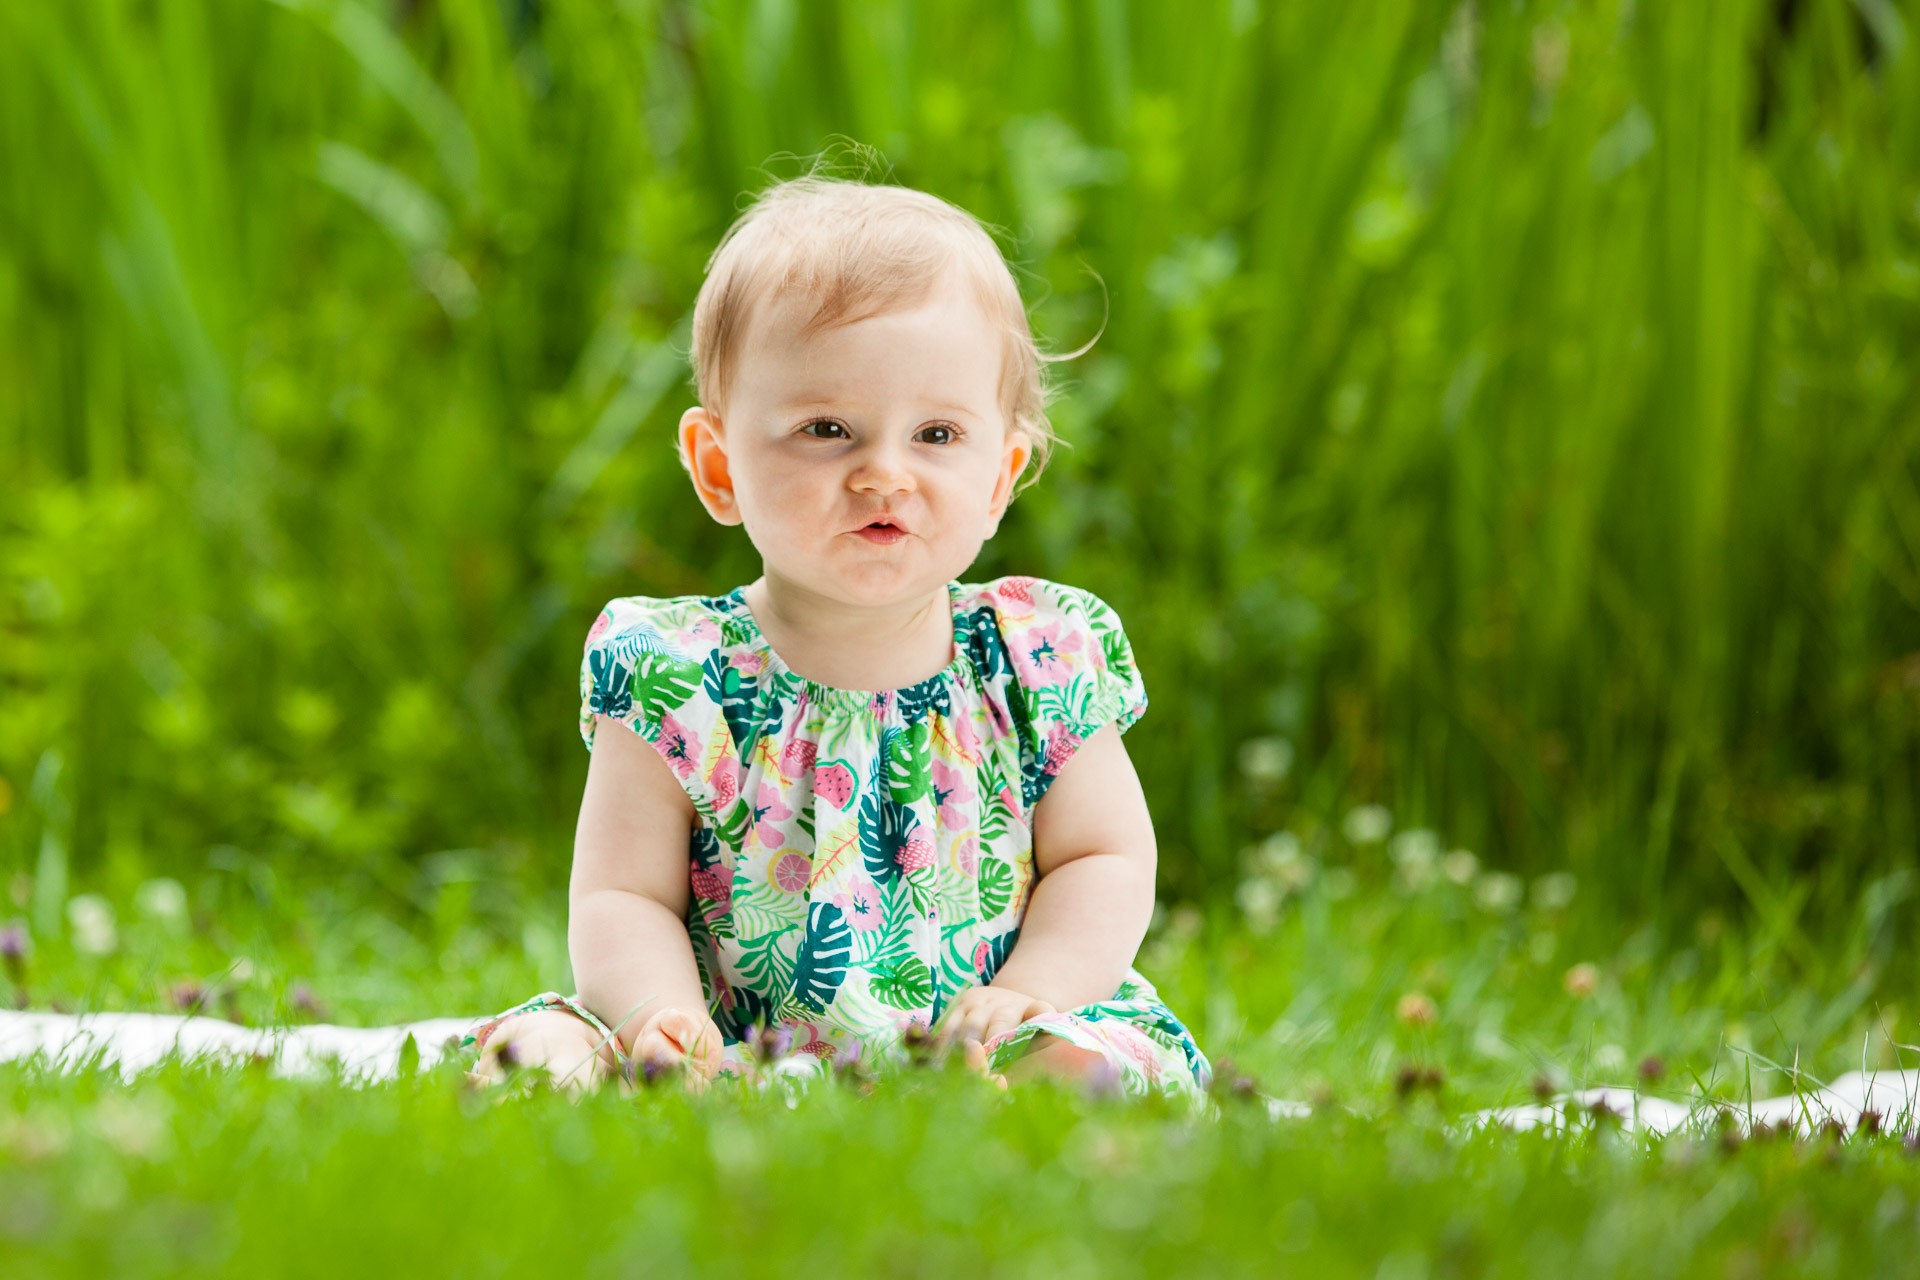 babyfotos-im-grünen-babylachen-fotografin-innsbruck-tirol